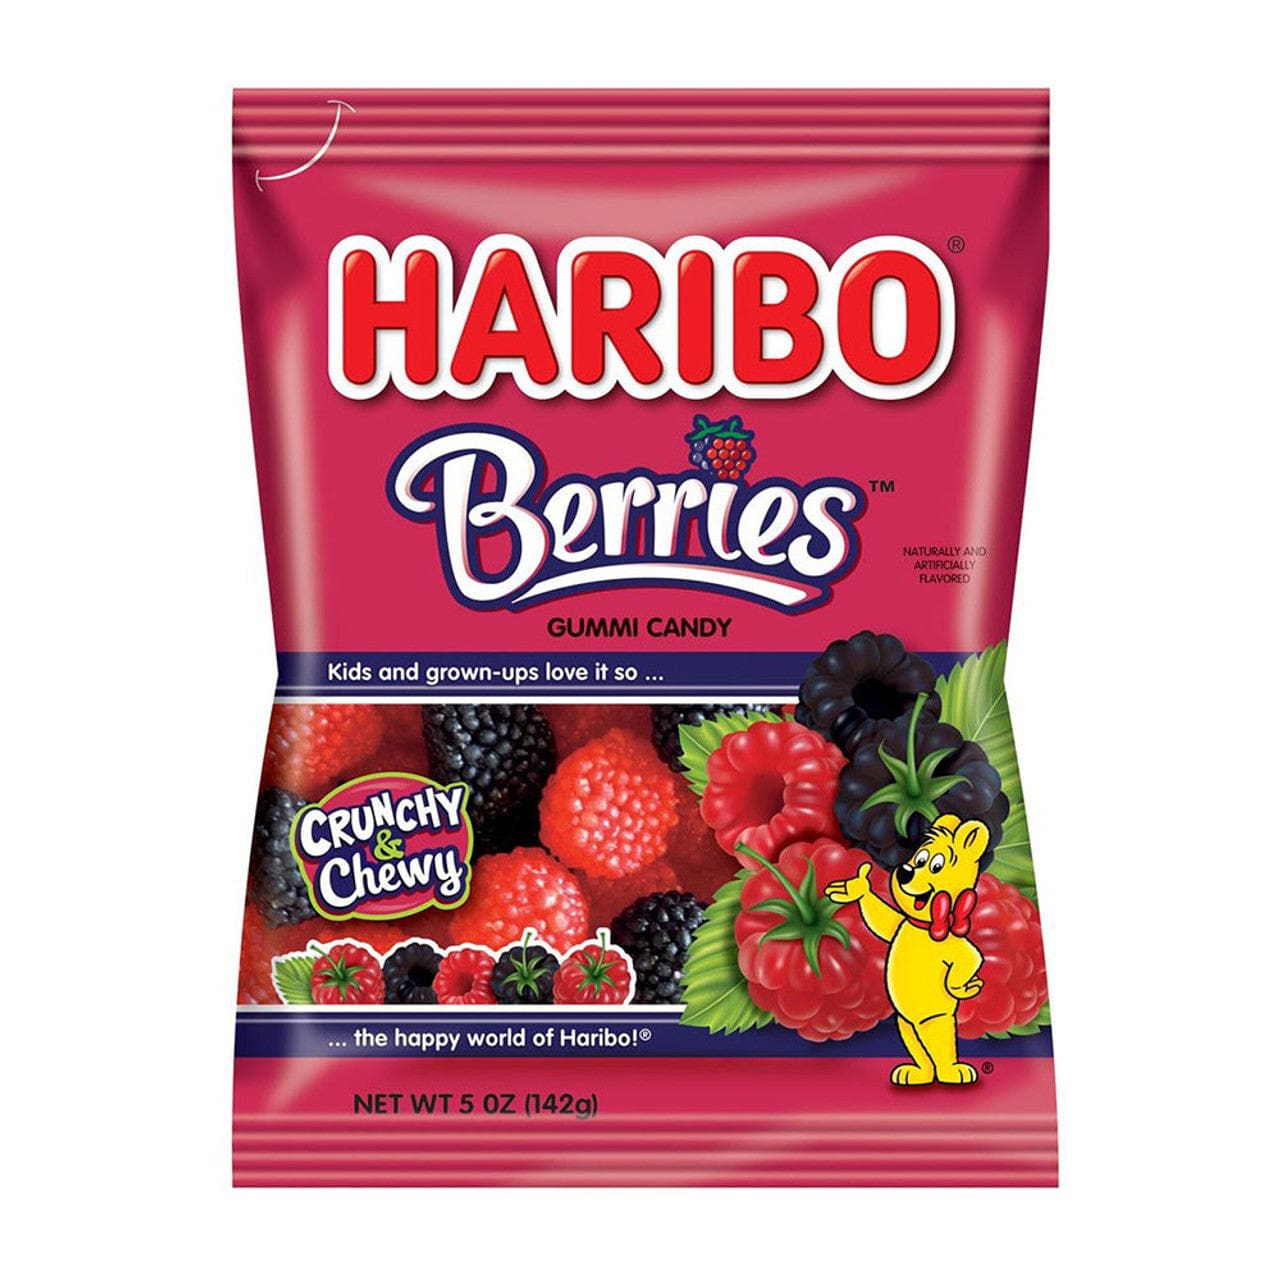 Haribo Haribo Berries Gummi Candy 5 oz Bag